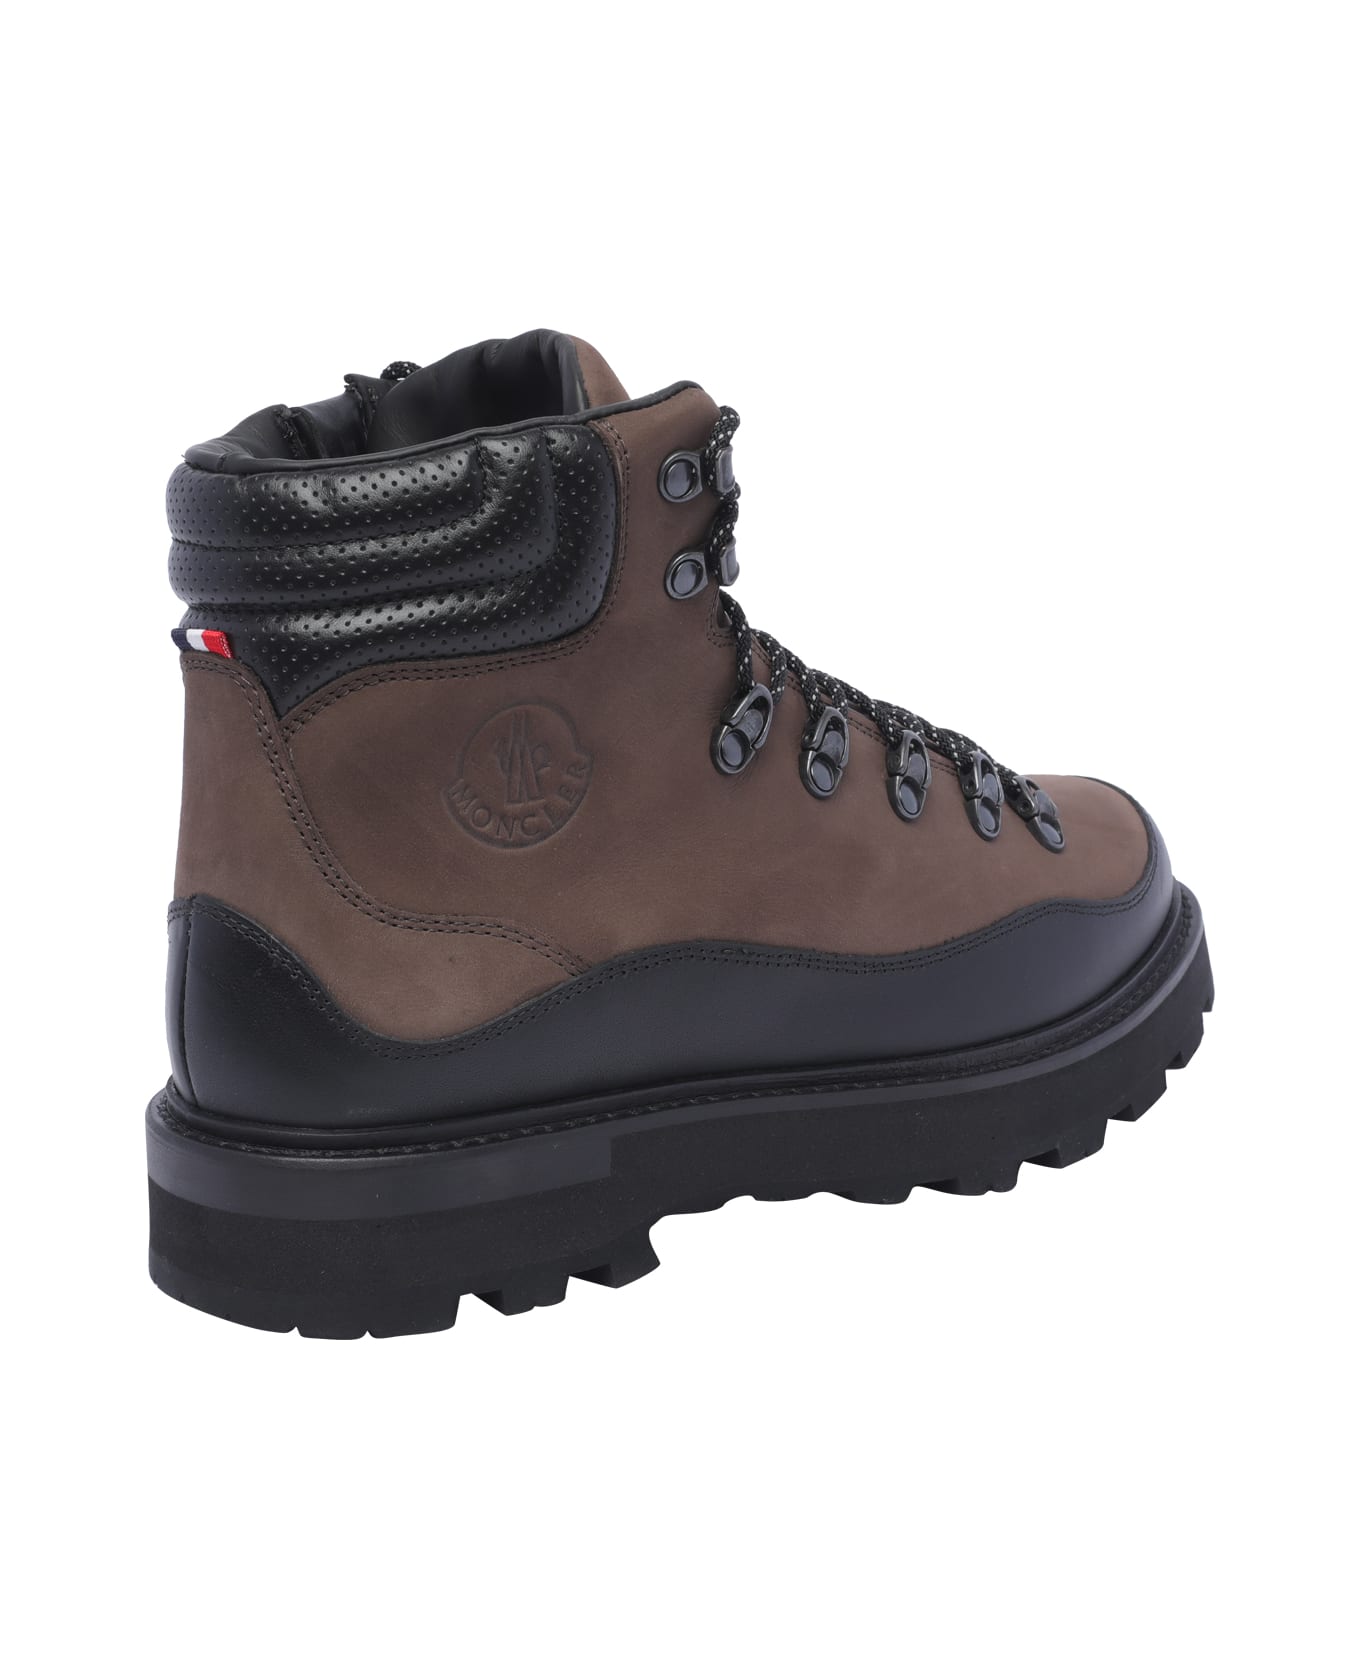 Moncler Peka Trek Hiking Boots - Brown ブーツ